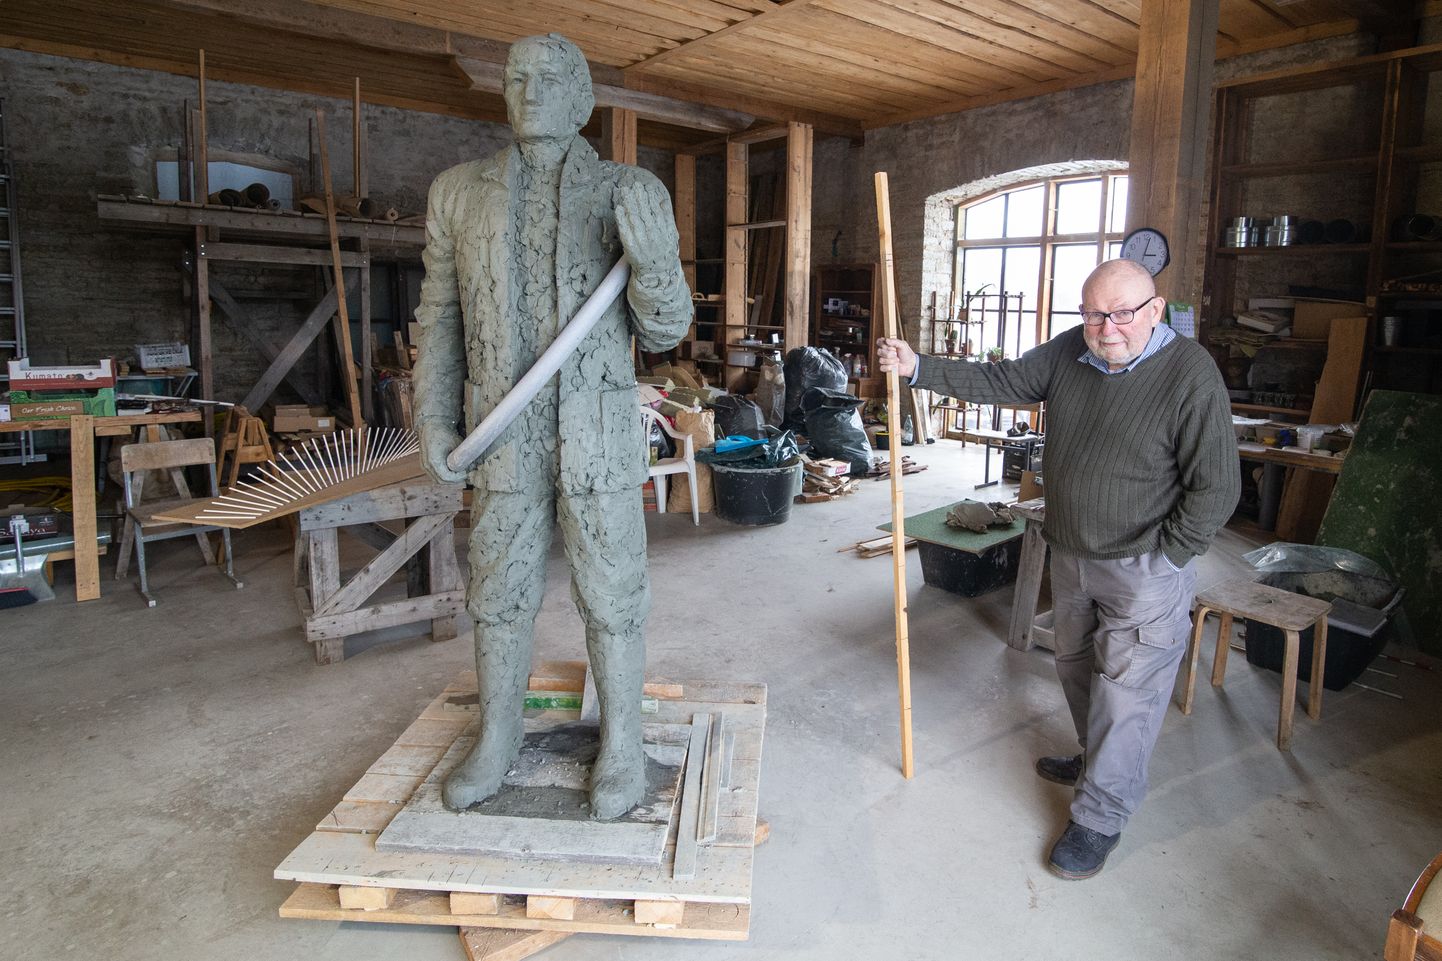 Лембит Палм изначально хотел сделать скульптуру повыше - 2,2 метра. Однако заказчик предпочел, чтобы шахтер больше походил на обычного человека, поэтому высота статуи составит 1,83 метра.